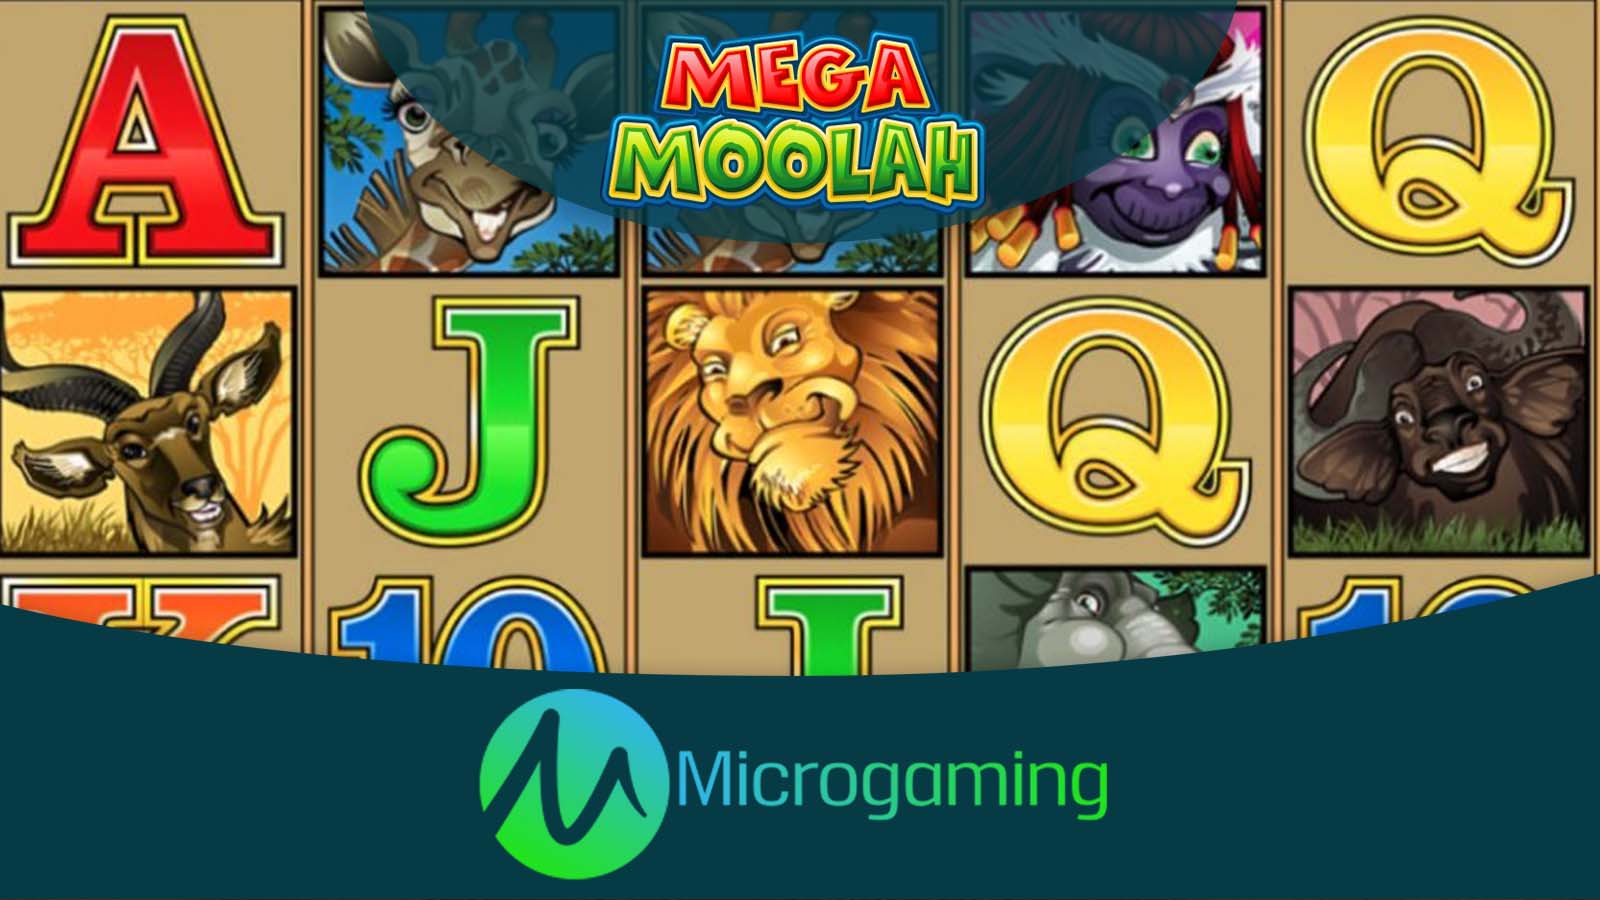 Mega Moolah – Microgaming